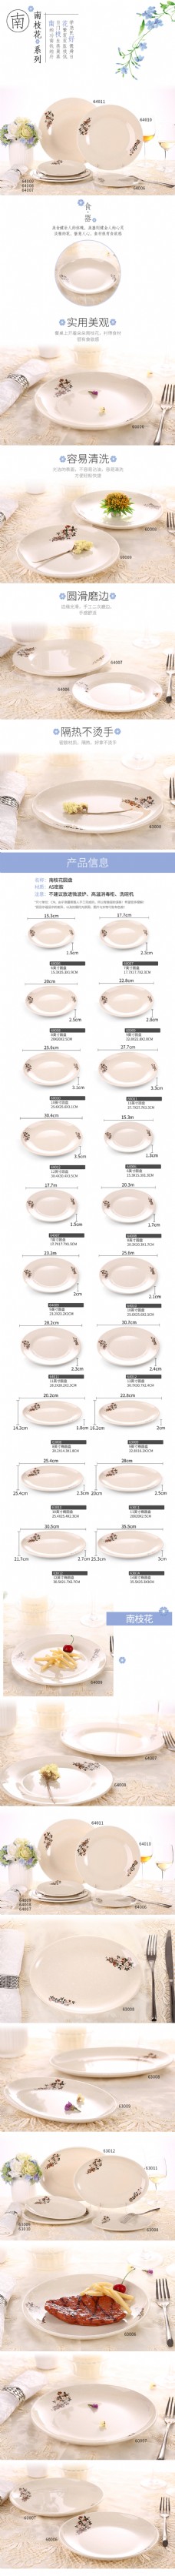 电商淘宝花色系列圆盘日用餐具详情页模板